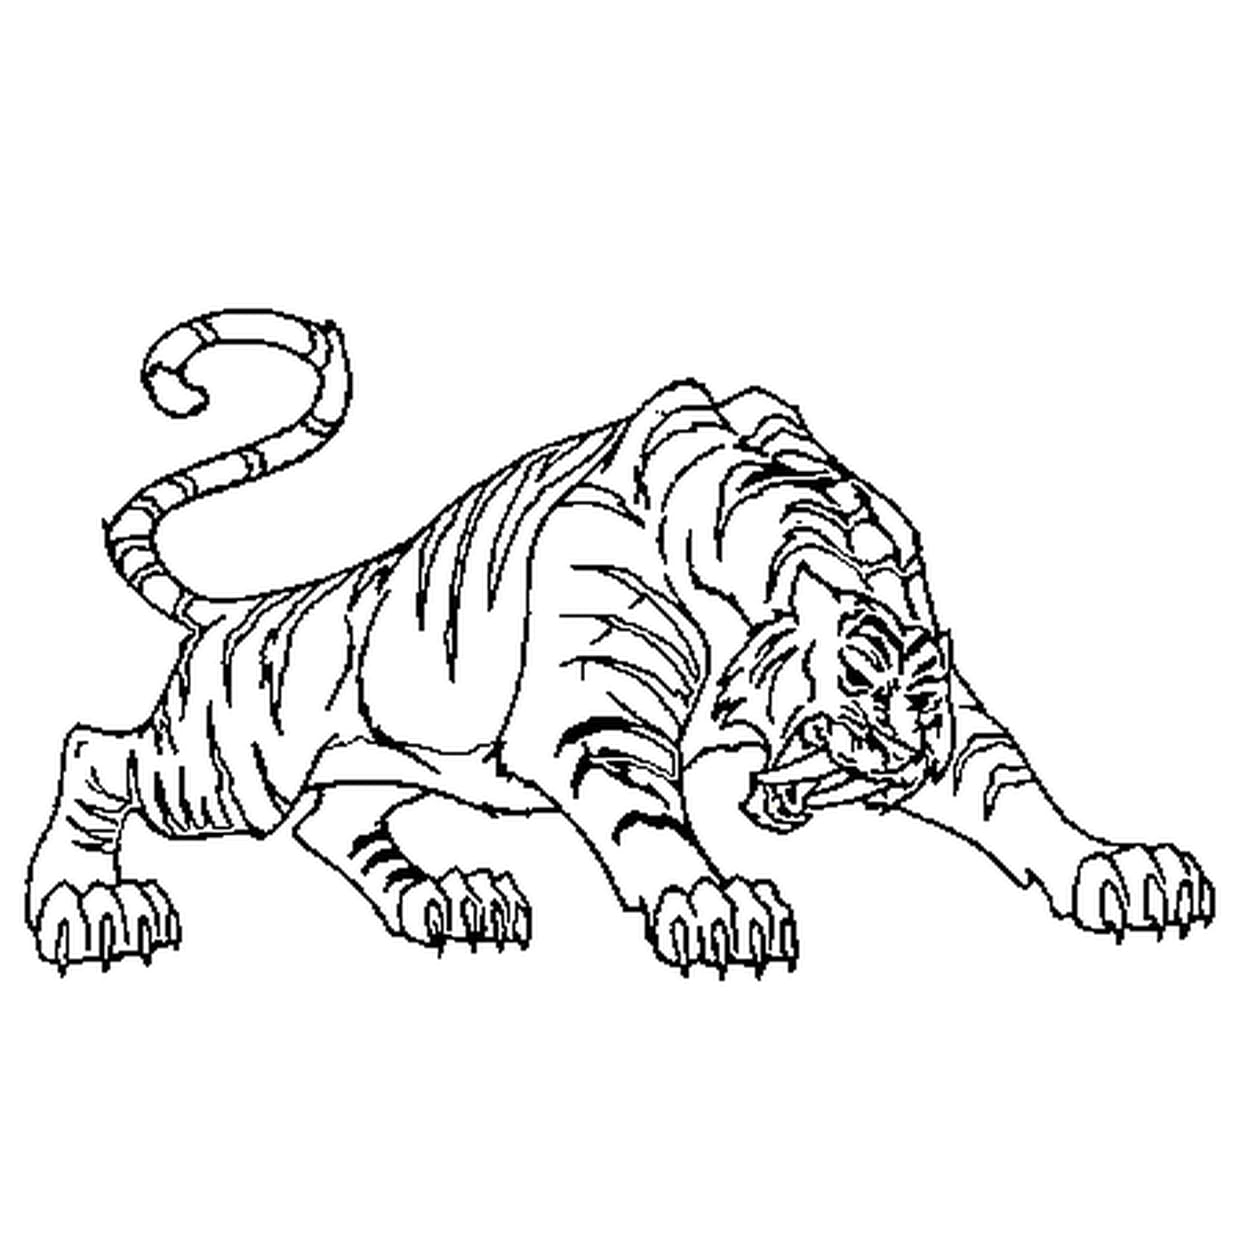 Стоковые фотографии по запросу Лев и тигр